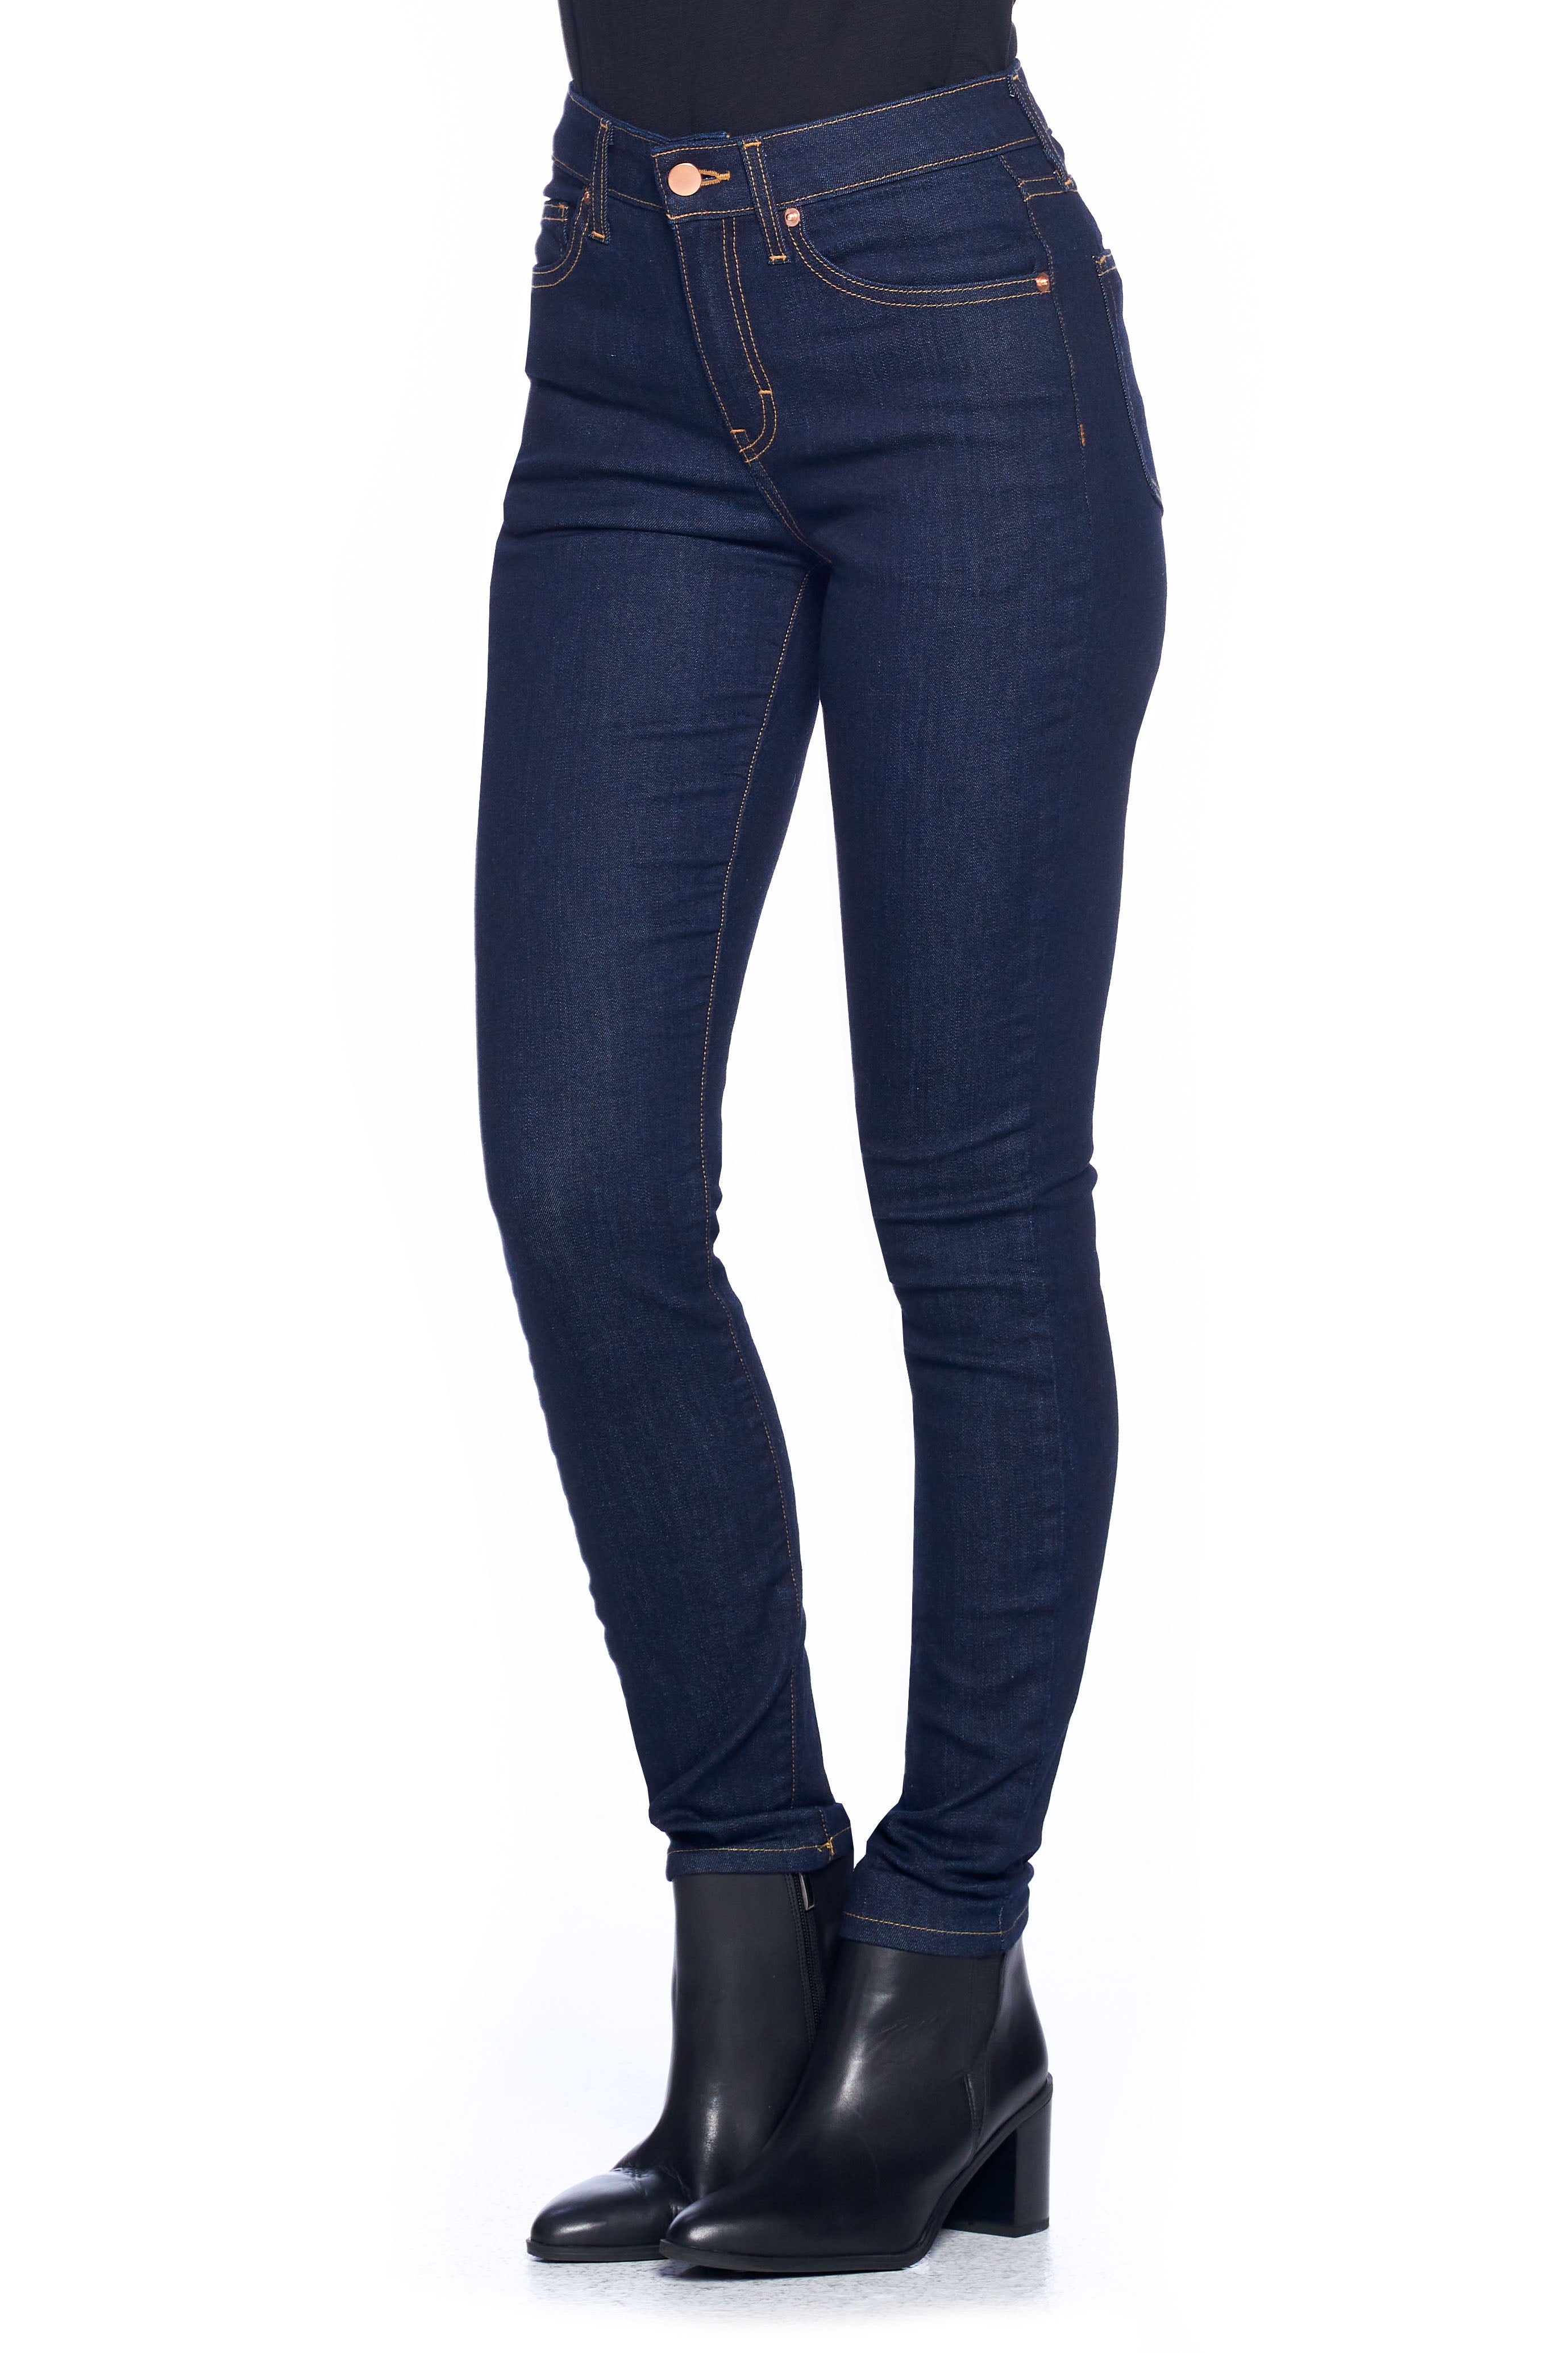 Trillen nemen Vlekkeloos Women's Comfort Skinny Fit Jeans | Dark Indigo | Made in the USA - Aviator